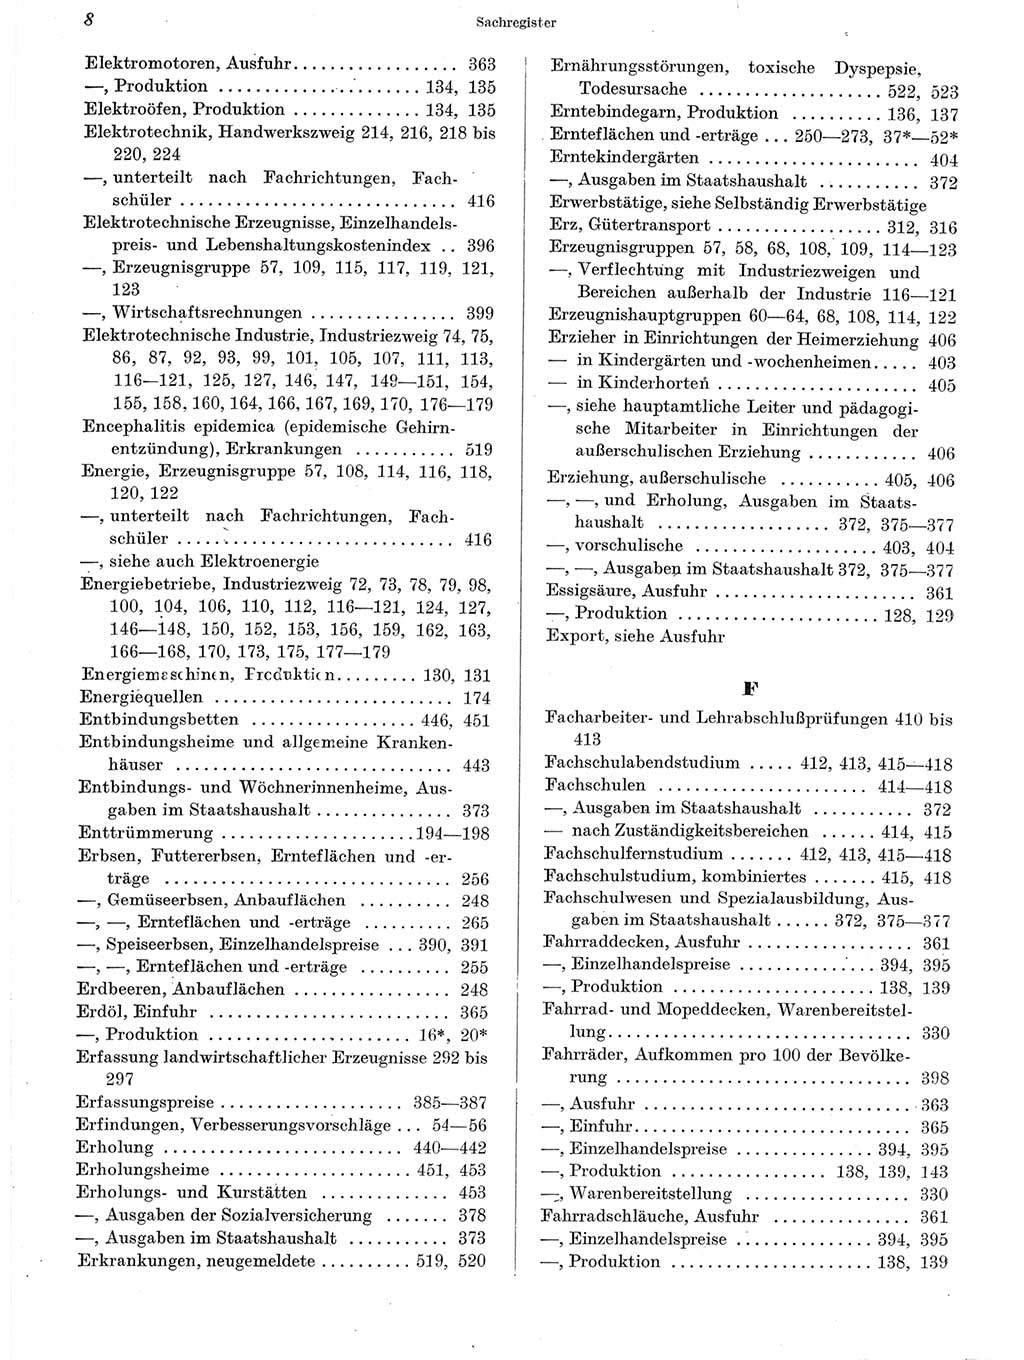 Statistisches Jahrbuch der Deutschen Demokratischen Republik (DDR) 1963, Seite 8 (Stat. Jb. DDR 1963, S. 8)